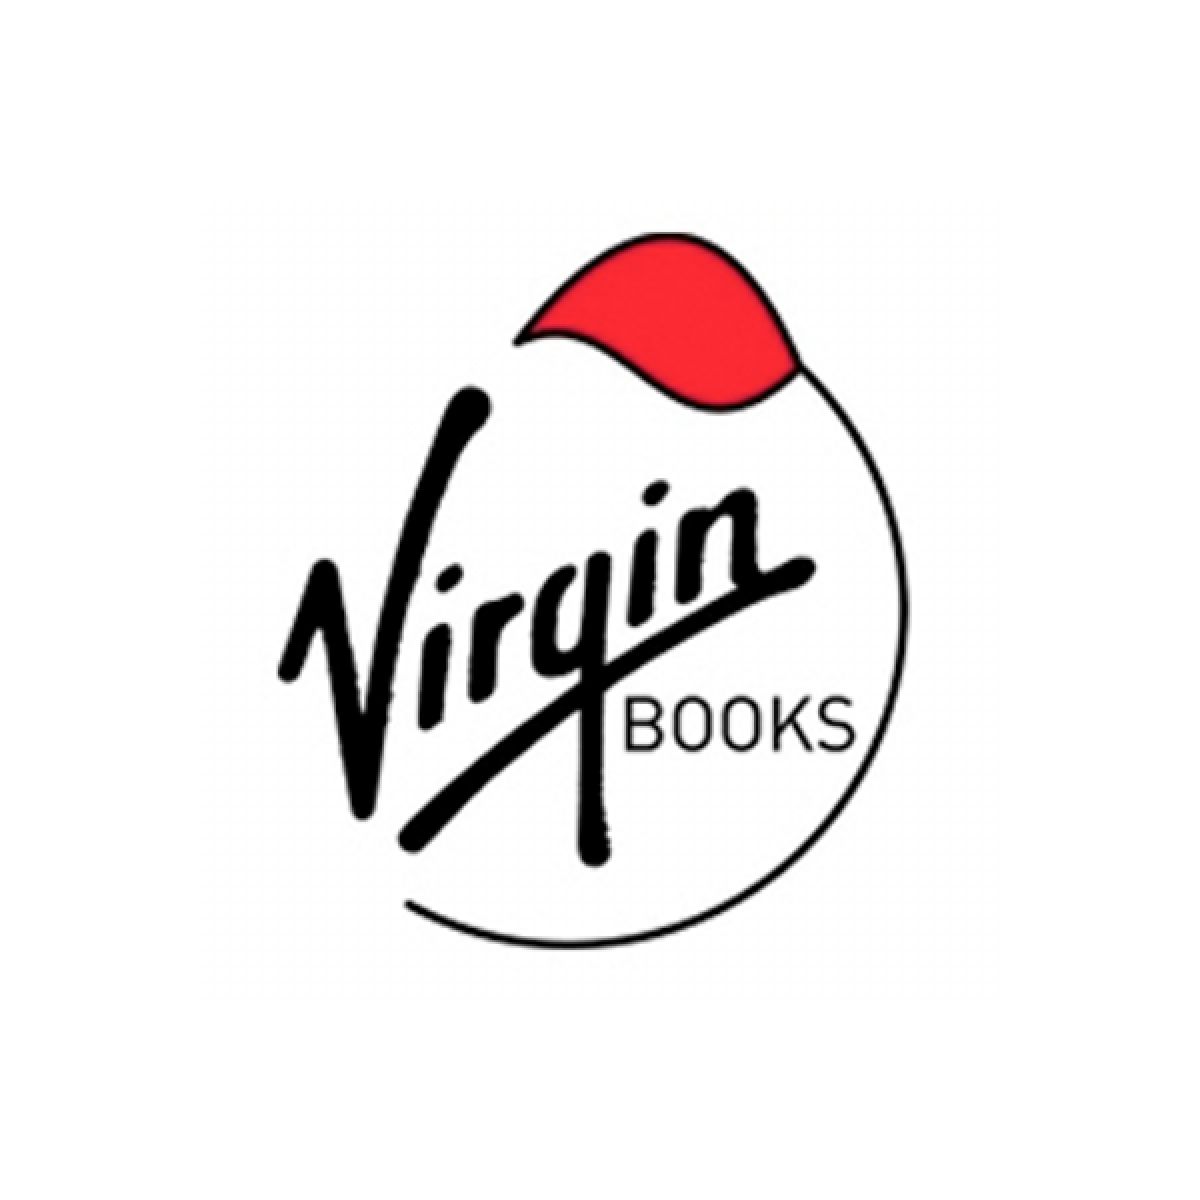 Virgin Books logo